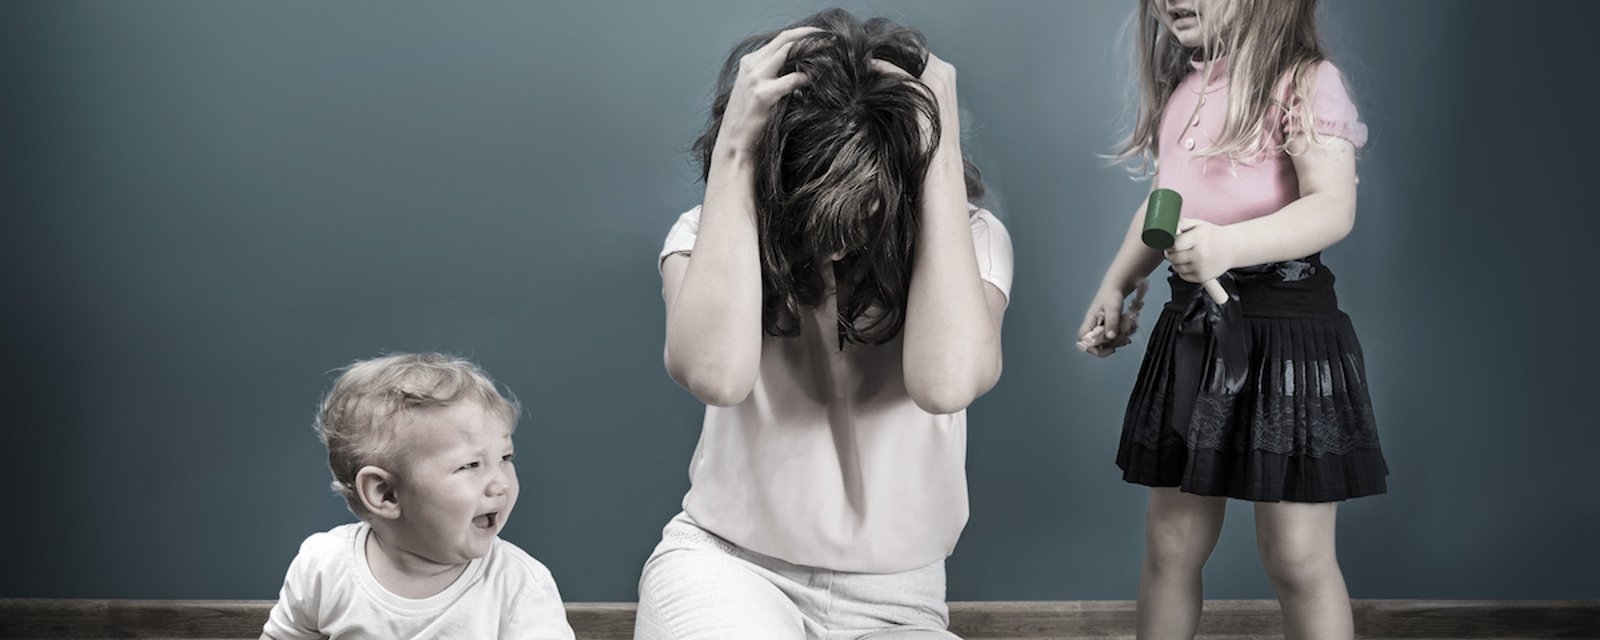 7 façons d'empêcher votre enfant d'agir de manière irrespectueuse